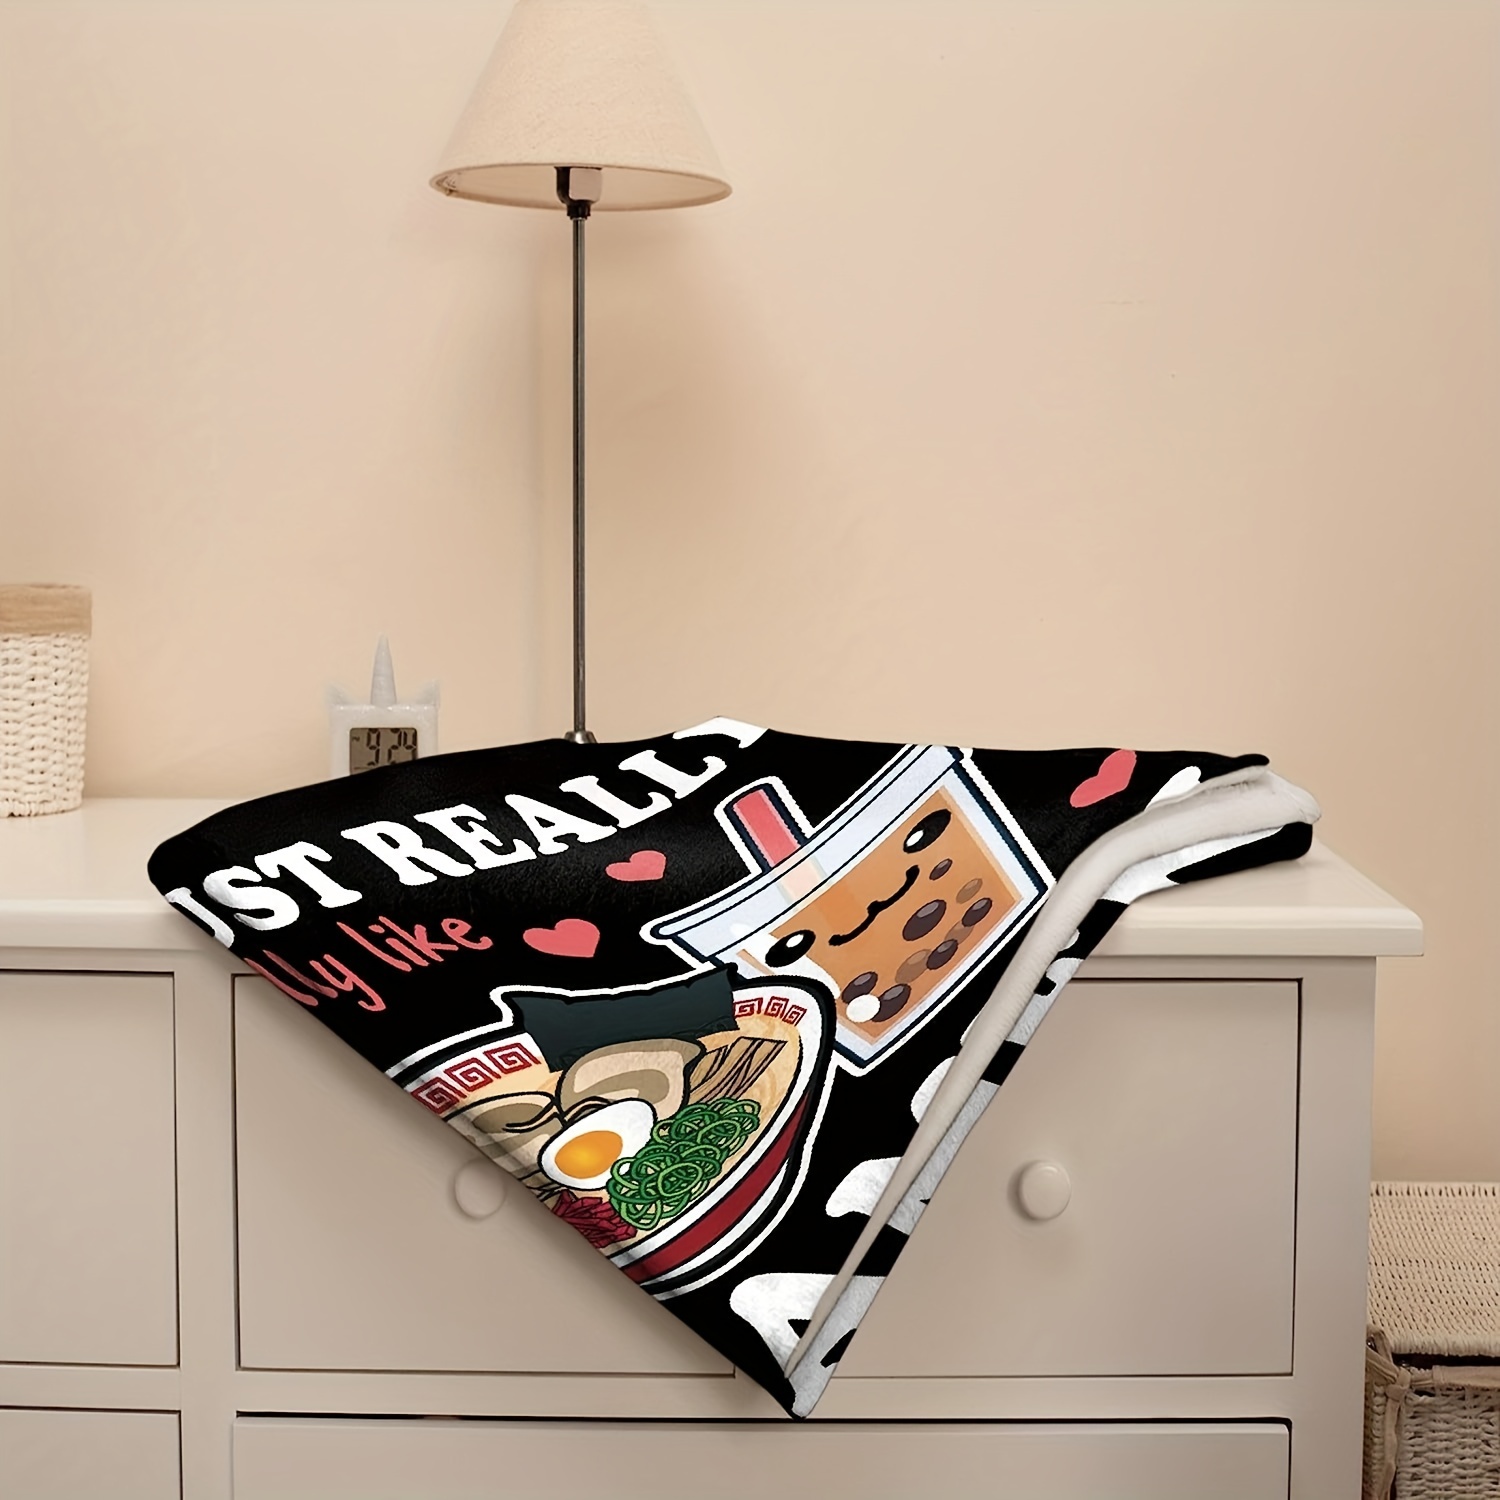  Pizza Blanket Super Soft Flannel Lightweight Throw